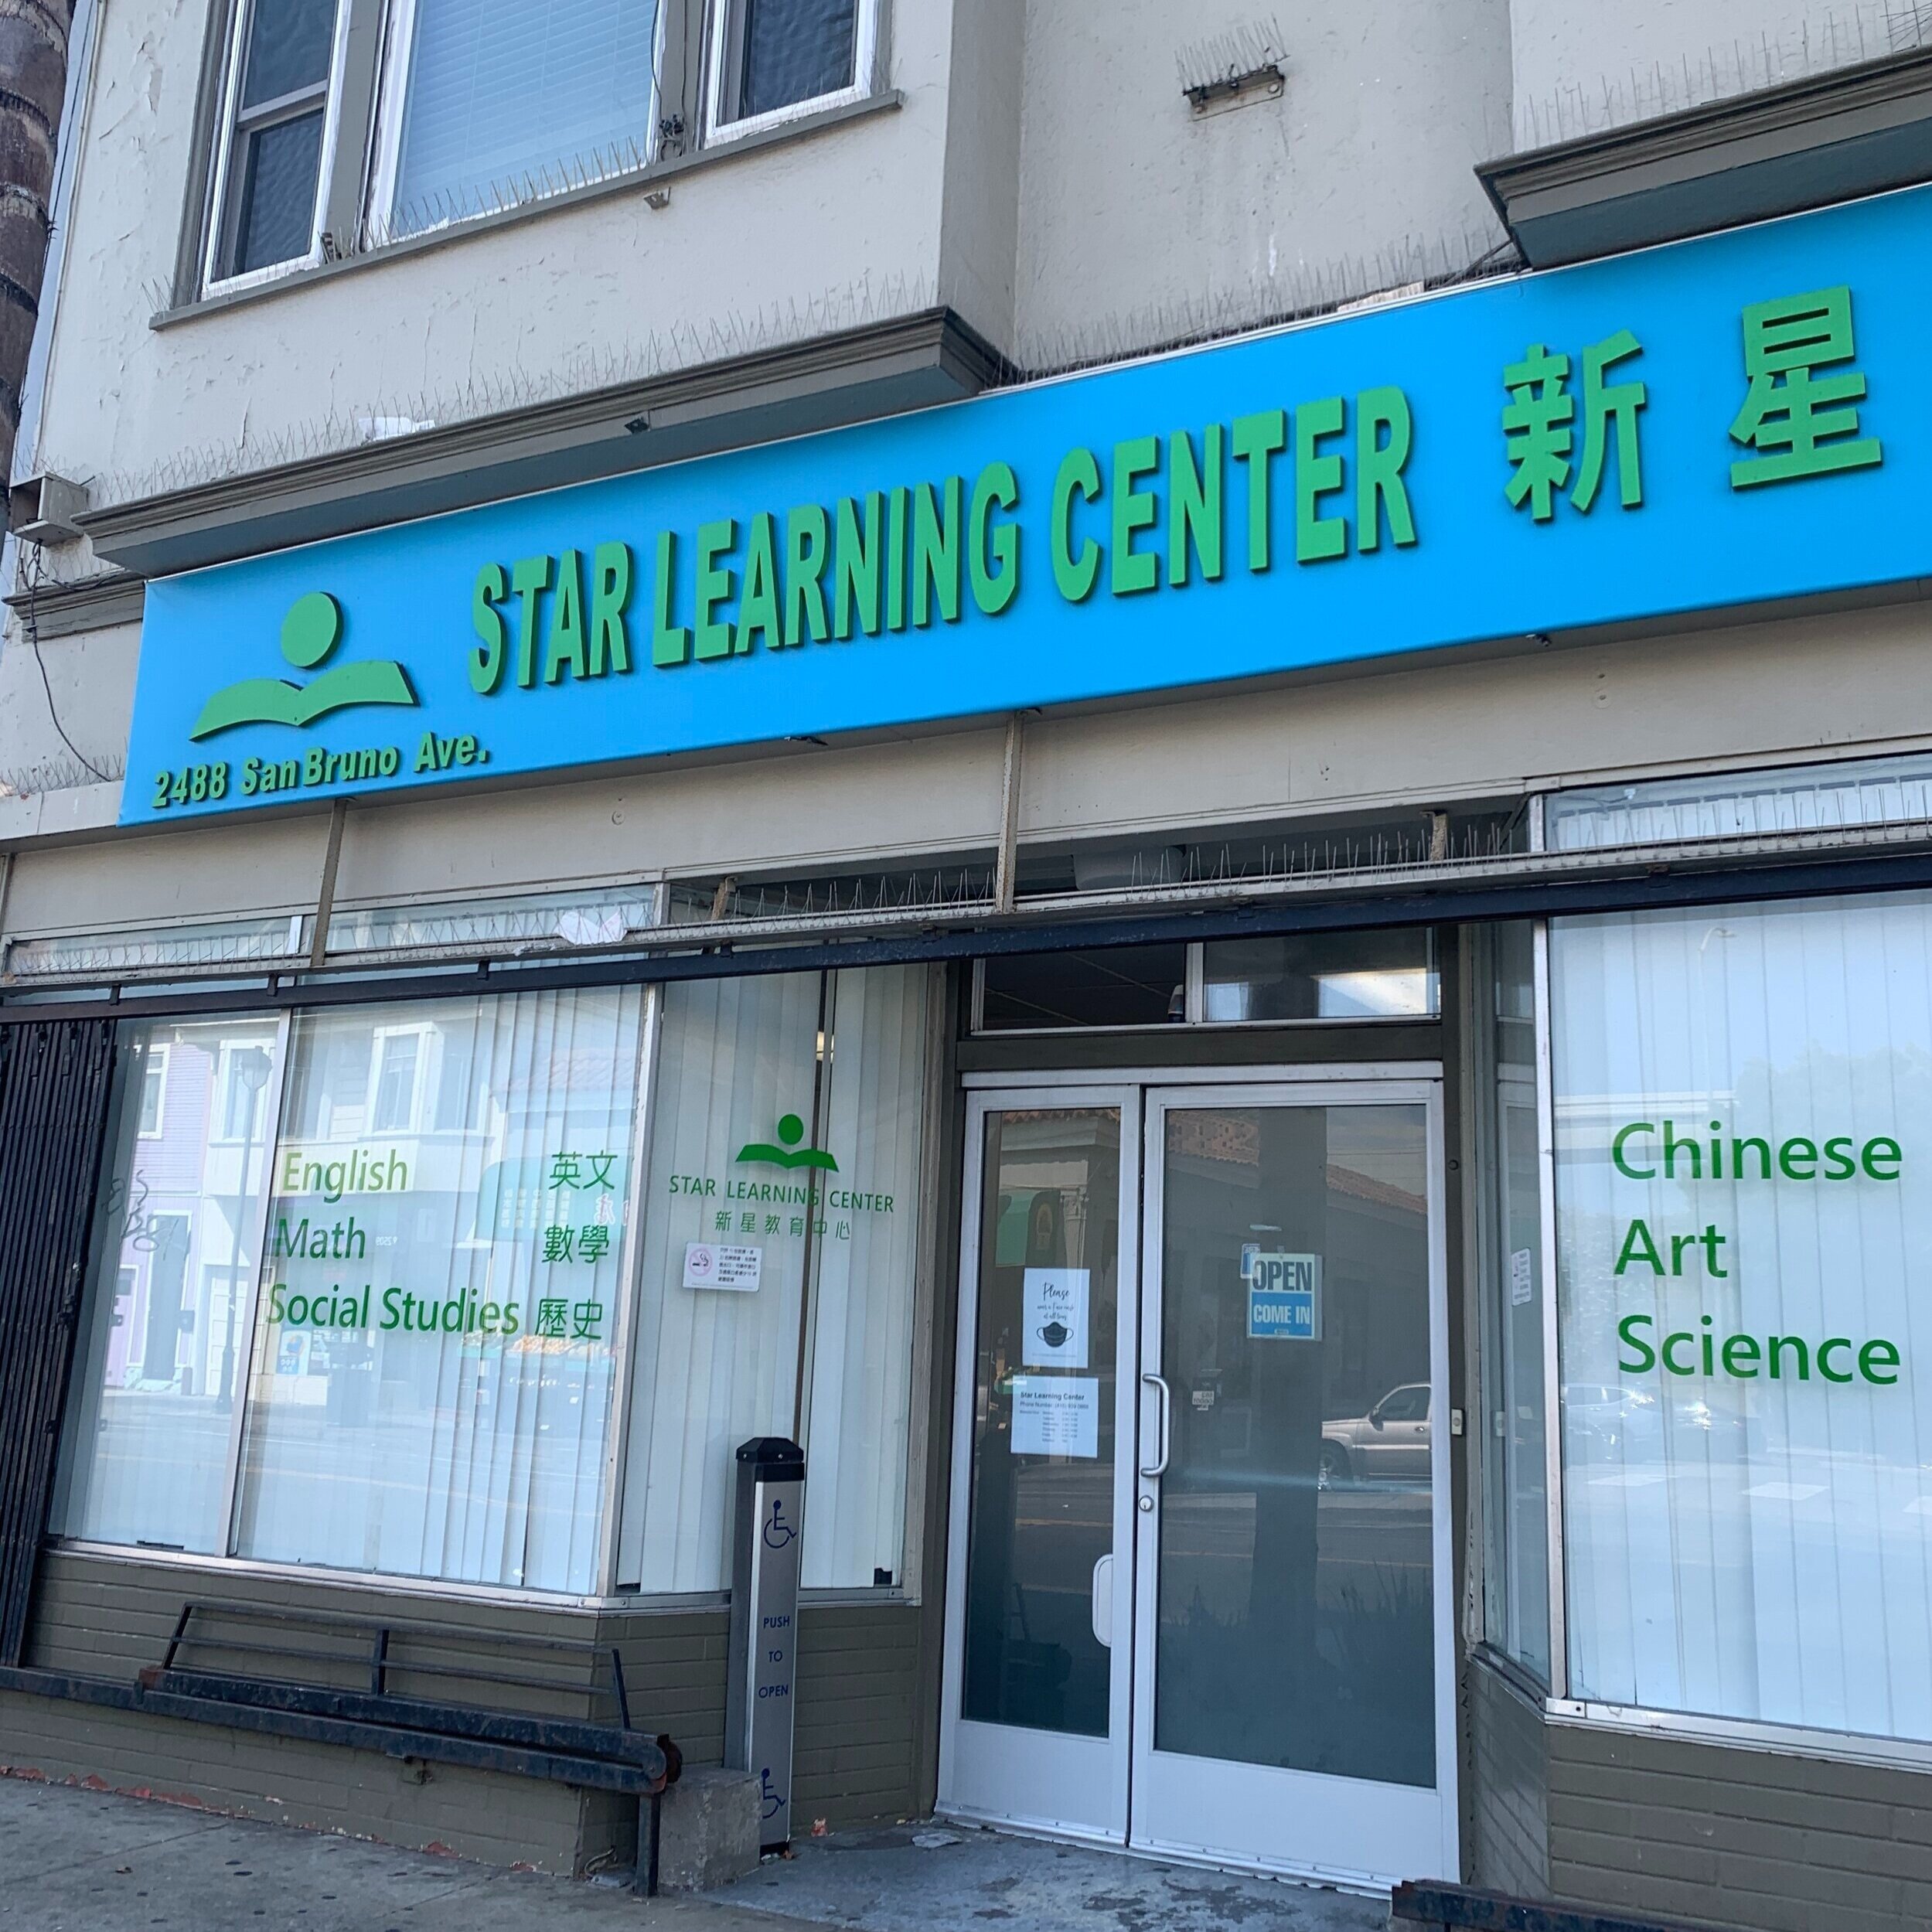 Star Learning Center